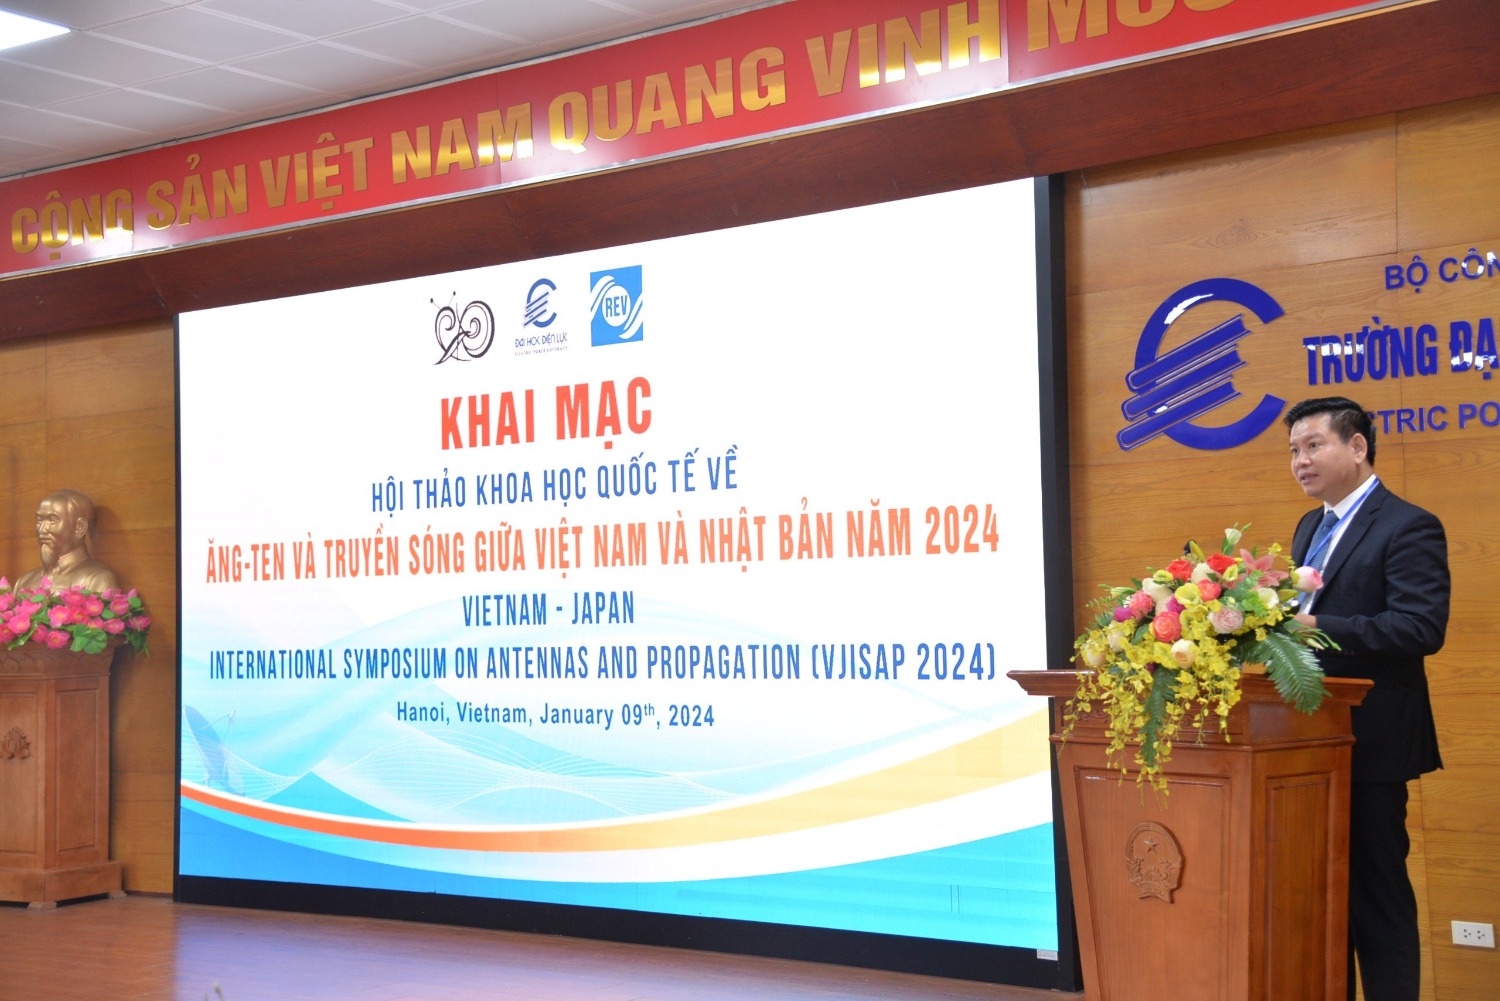 VJISAP 2024: Khai mạc Hội thảo khoa học Quốc tế về Ăng-ten và Truyền sóng giữa Việt Nam và Nhật Bản 